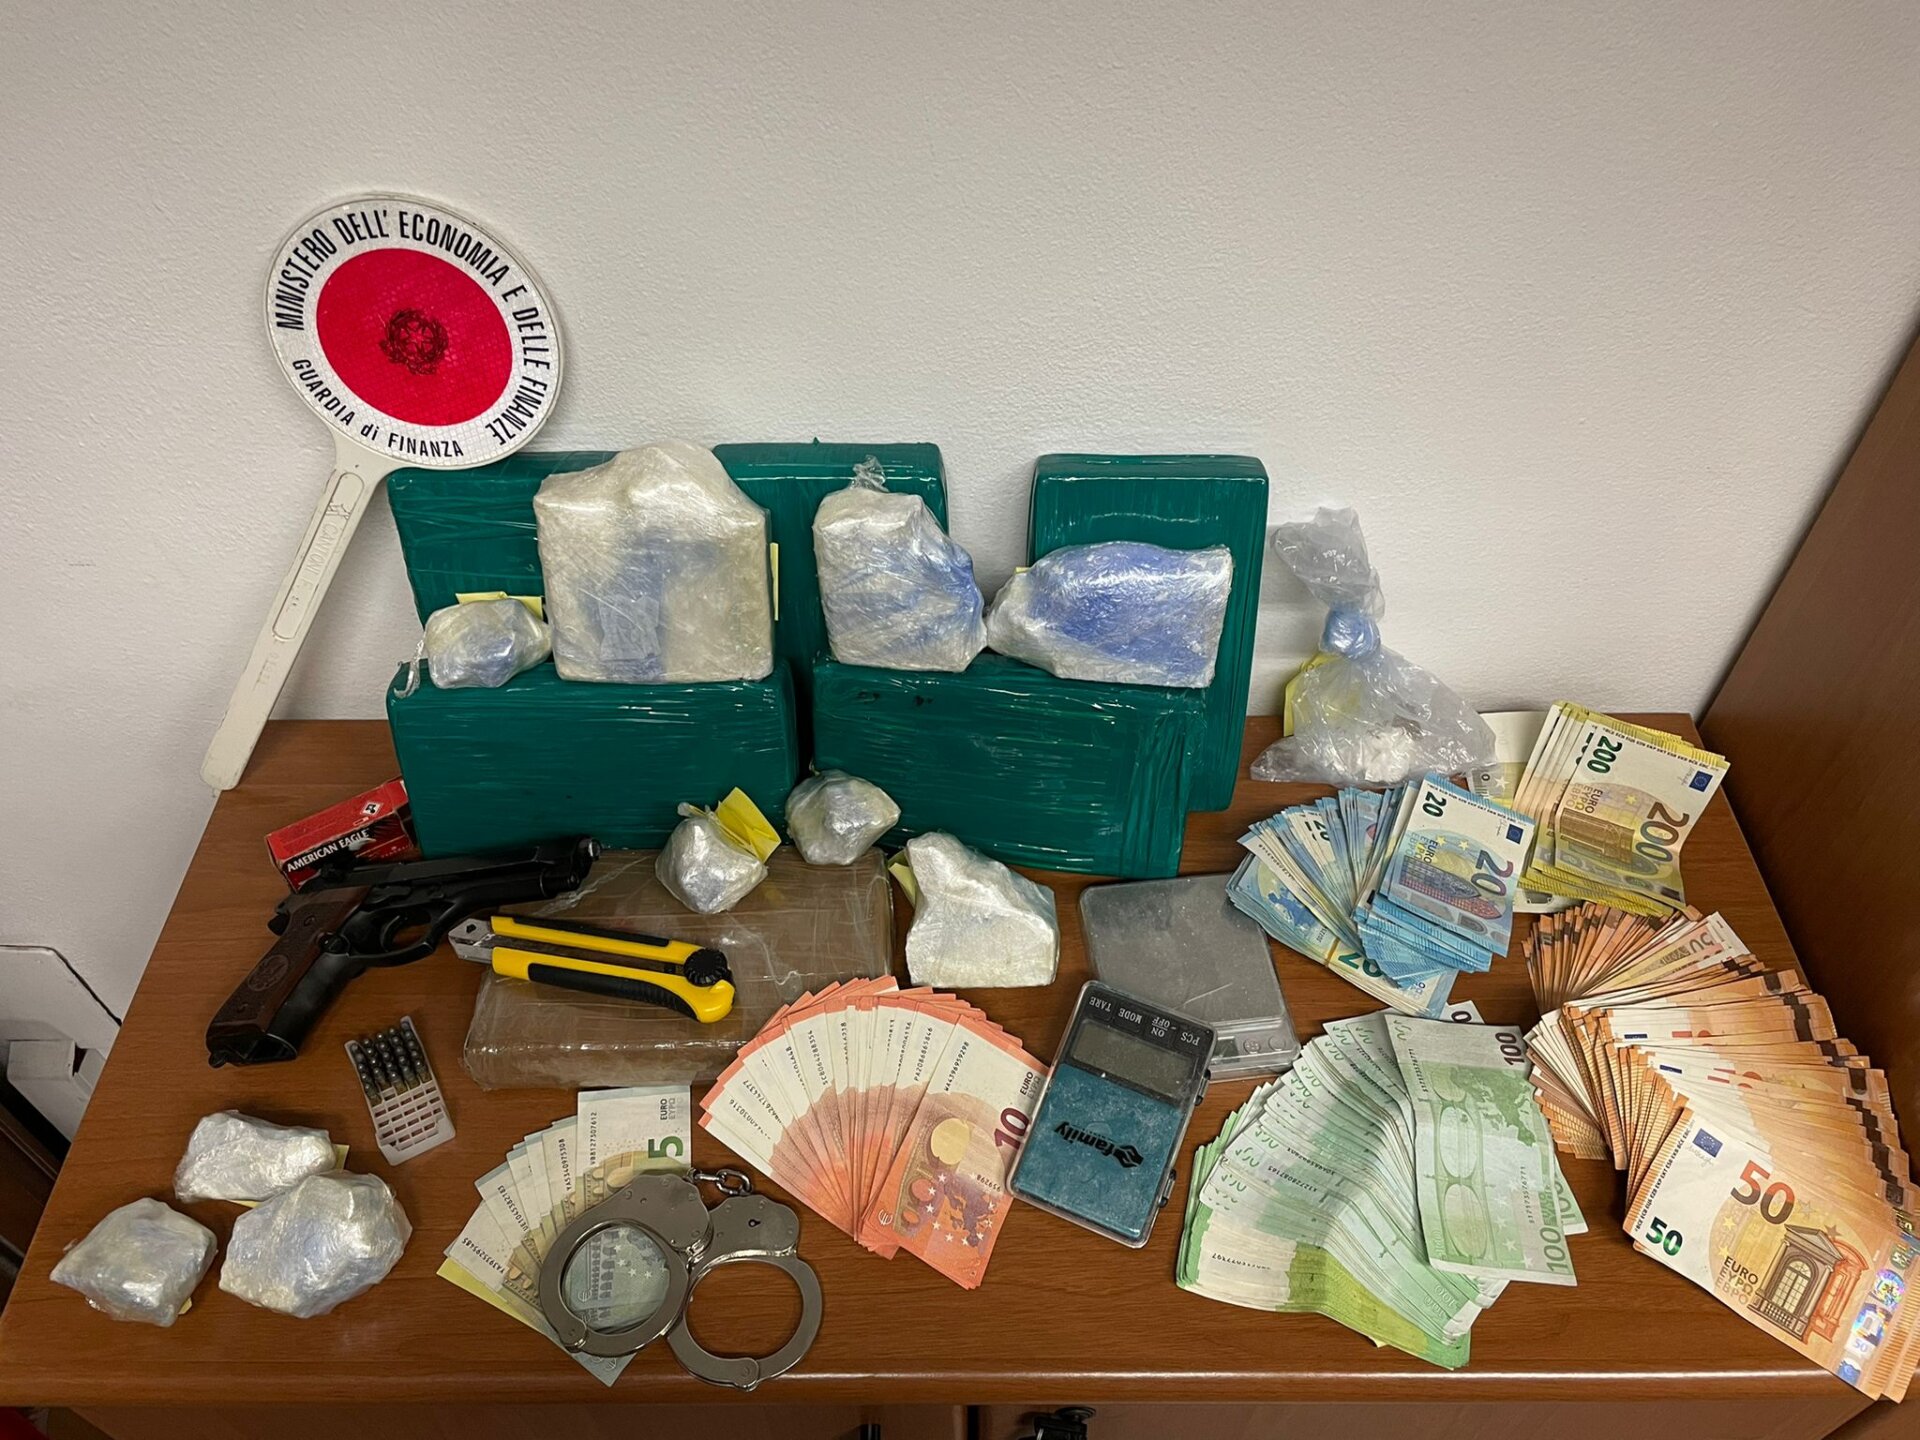 Arrestato trafficante di droga. Aveva 8,3 chilogrammi di cocaina e oltre 25mila euro in contanti